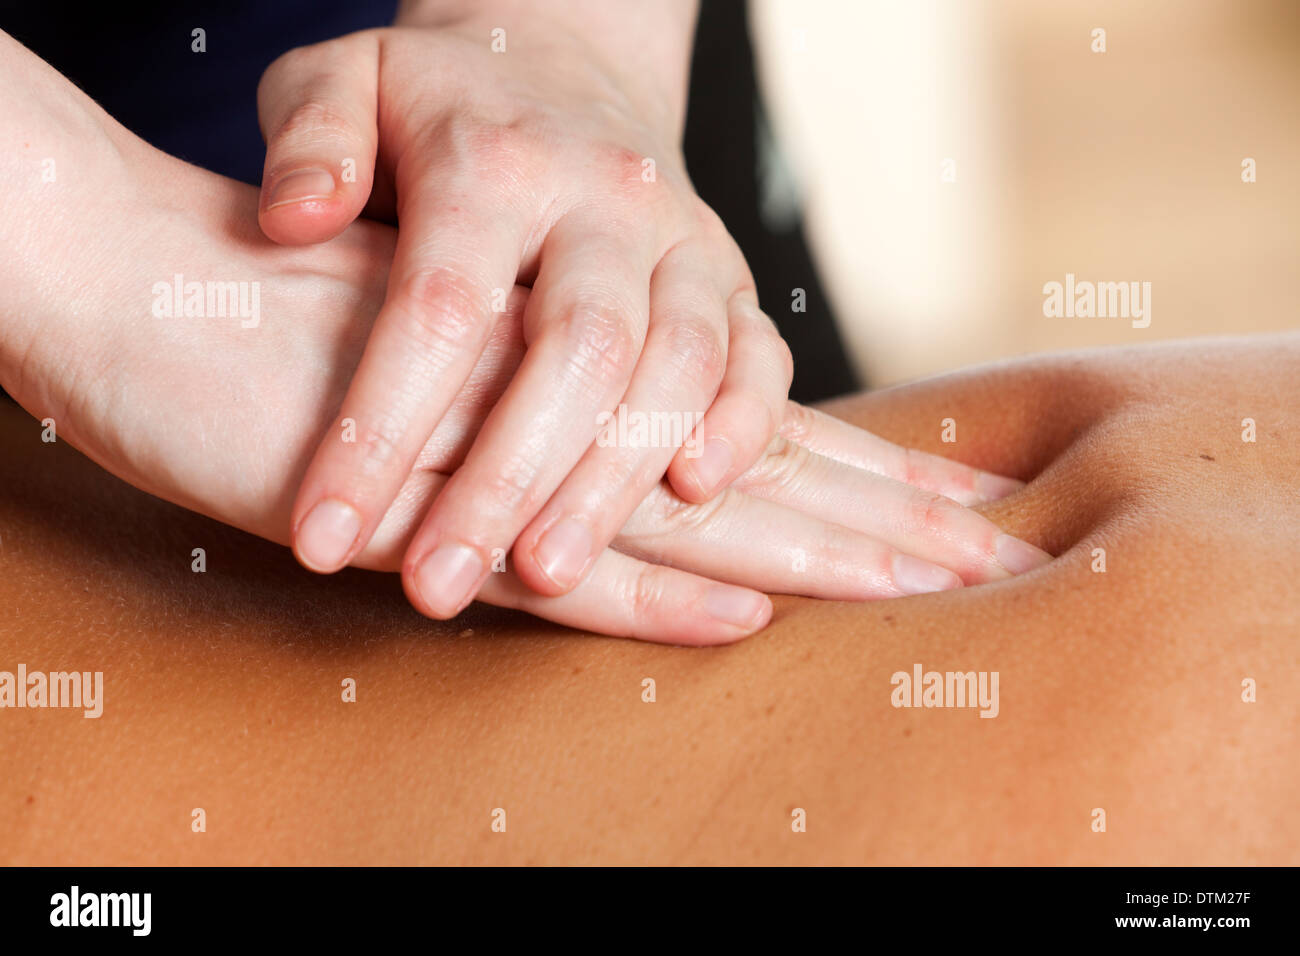 Rücken Sie-Massage. Nahaufnahme der Hände des weiblichen Masseur drücken eine Frau zurück Stockfoto